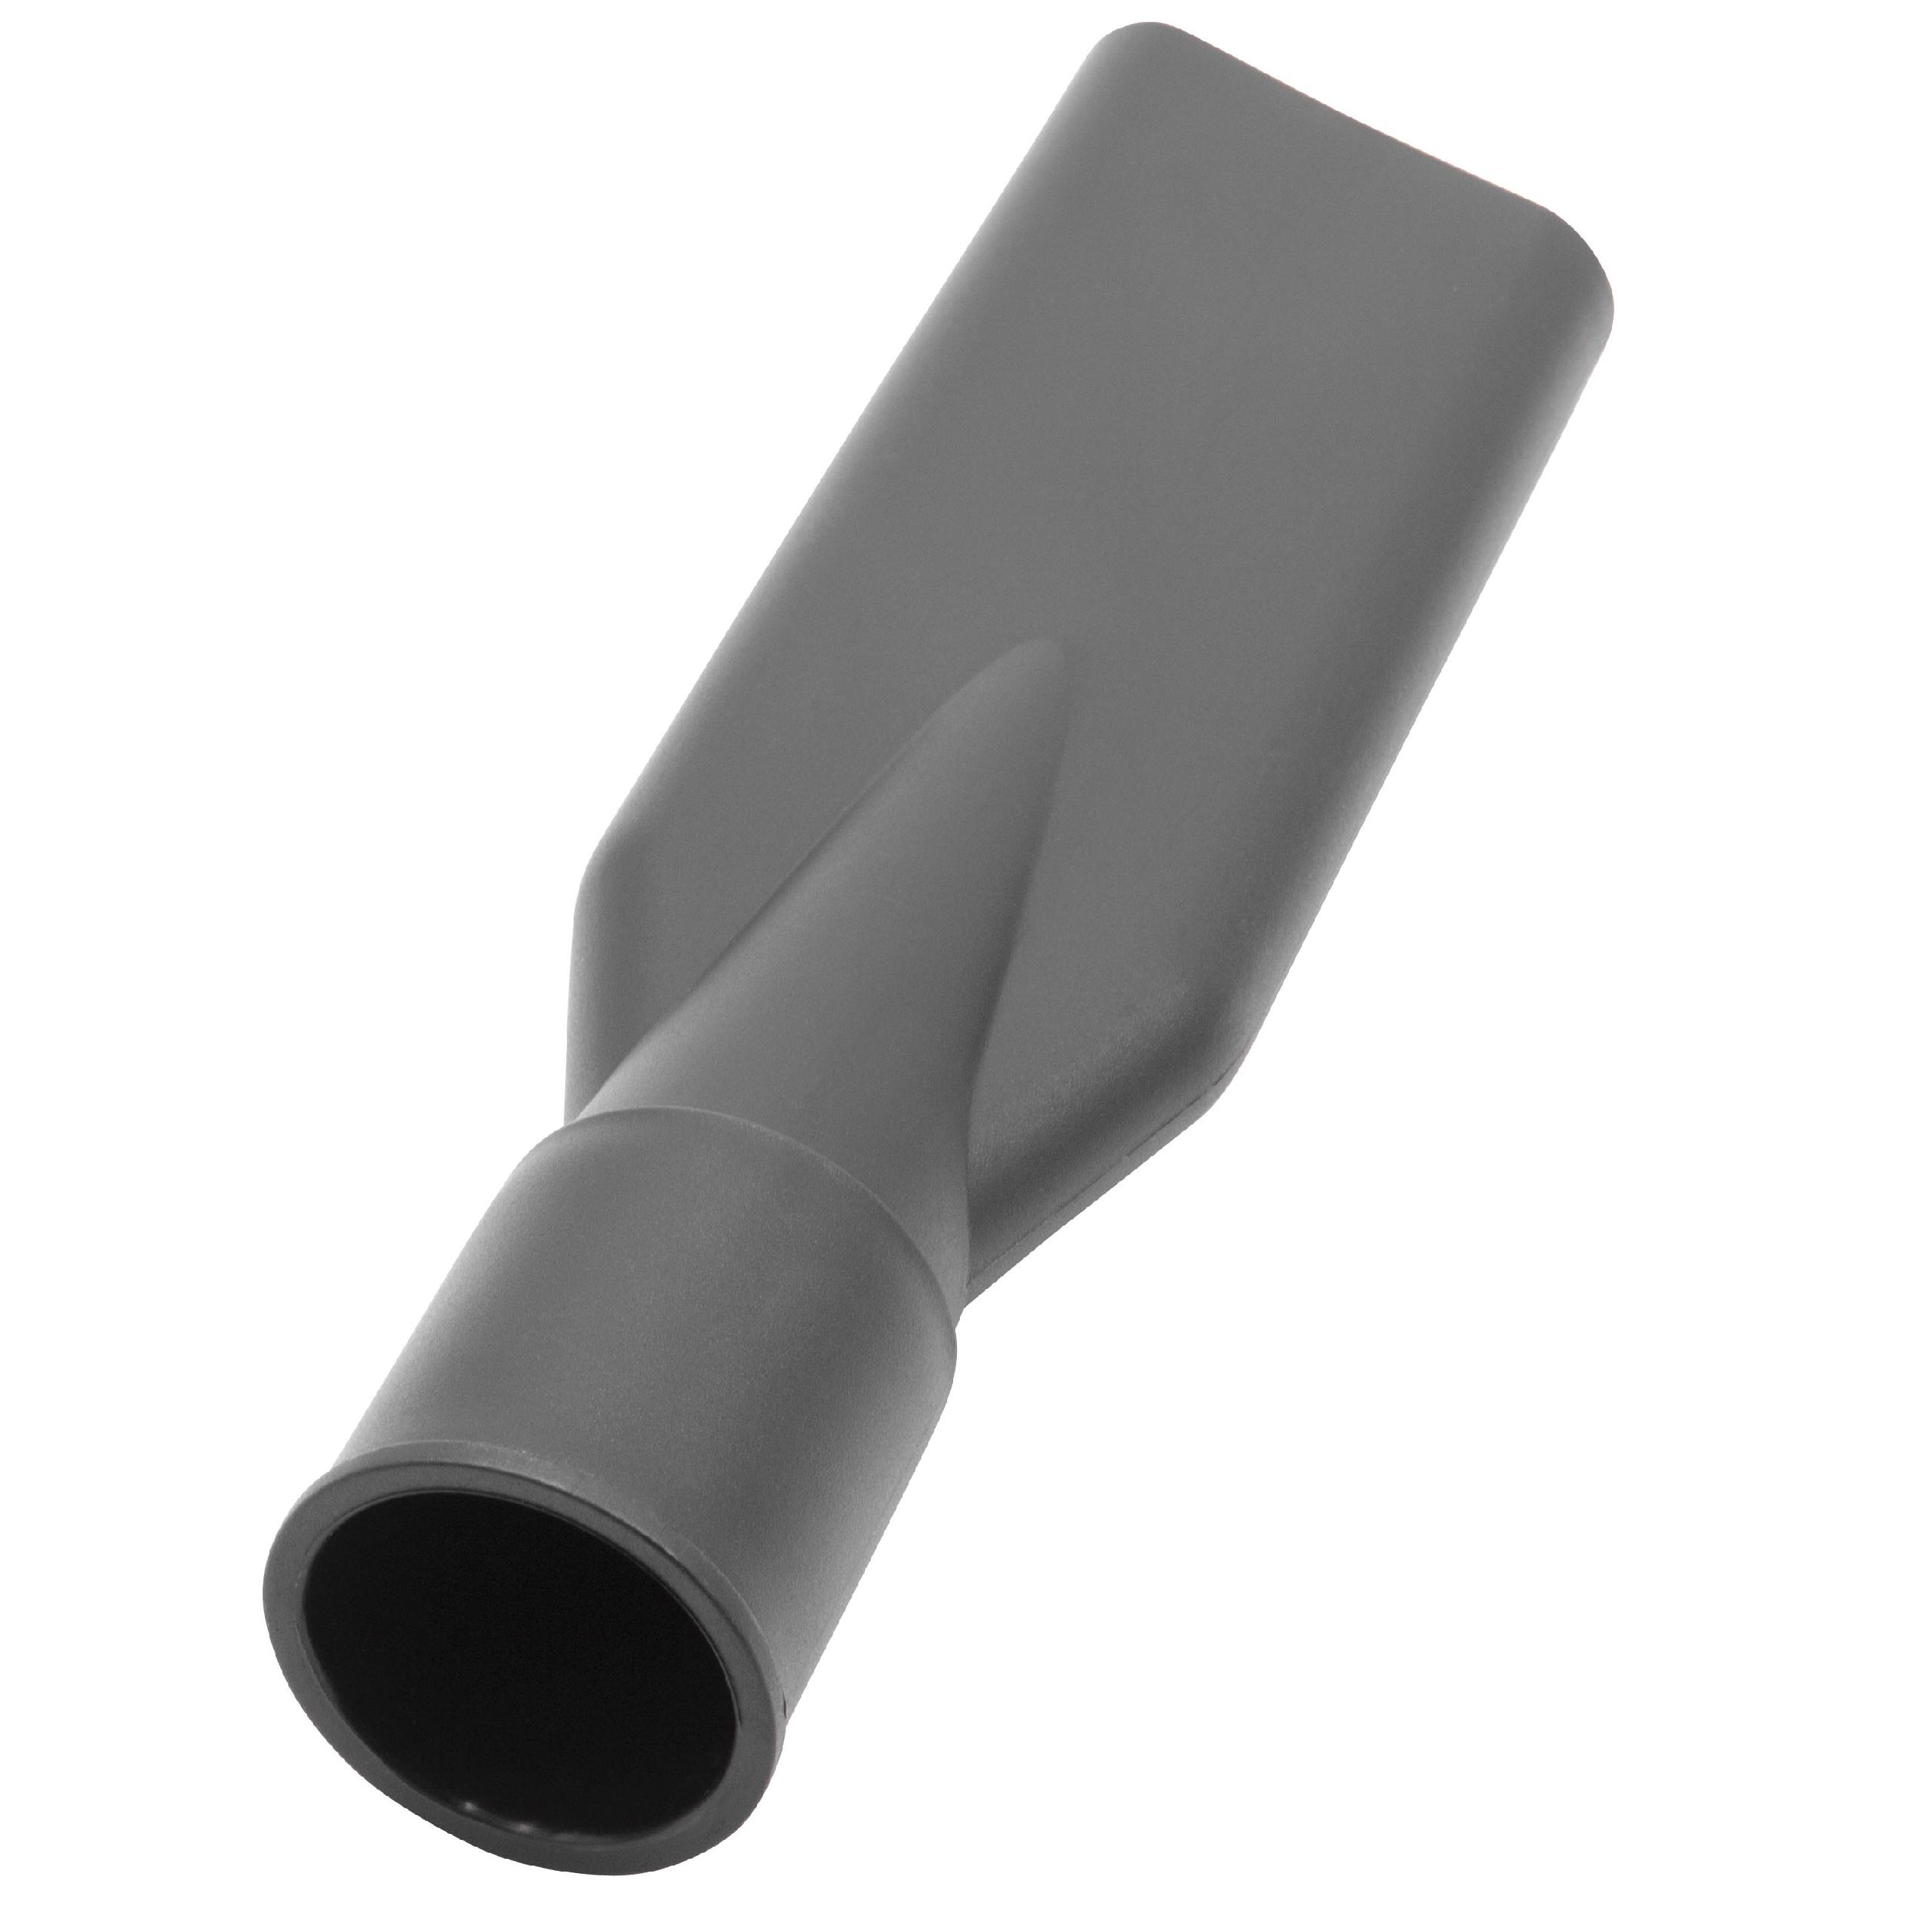 Staubsauger Fugendüse für 38 mm Rundanschluss passend für diverse Marken - Extra schmal